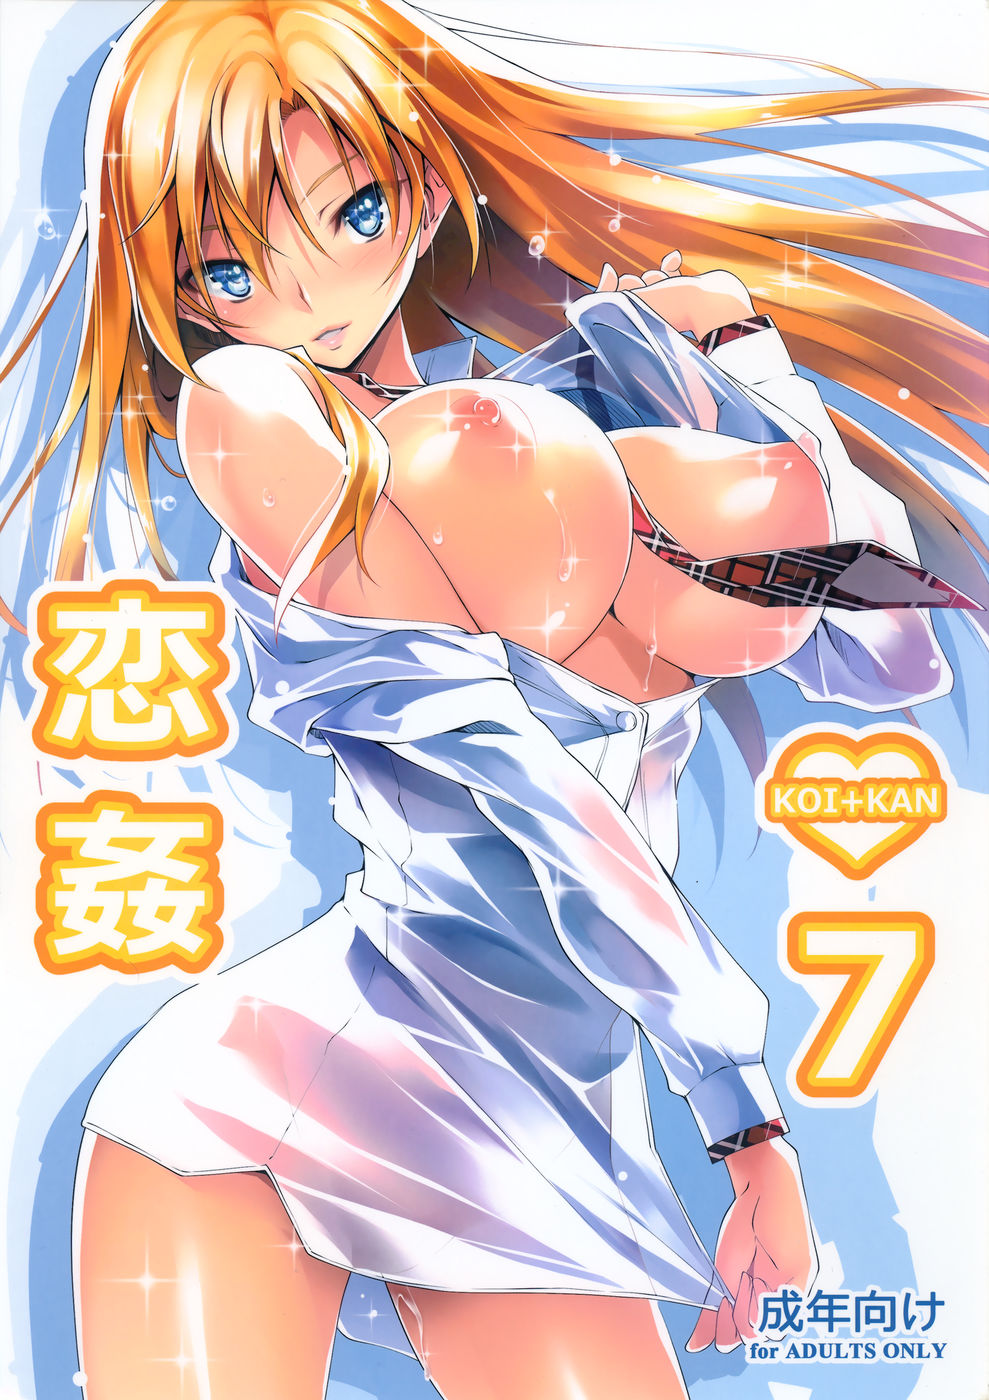 Hentai Manga Comic-Koi+Kan-Chapter 7-1